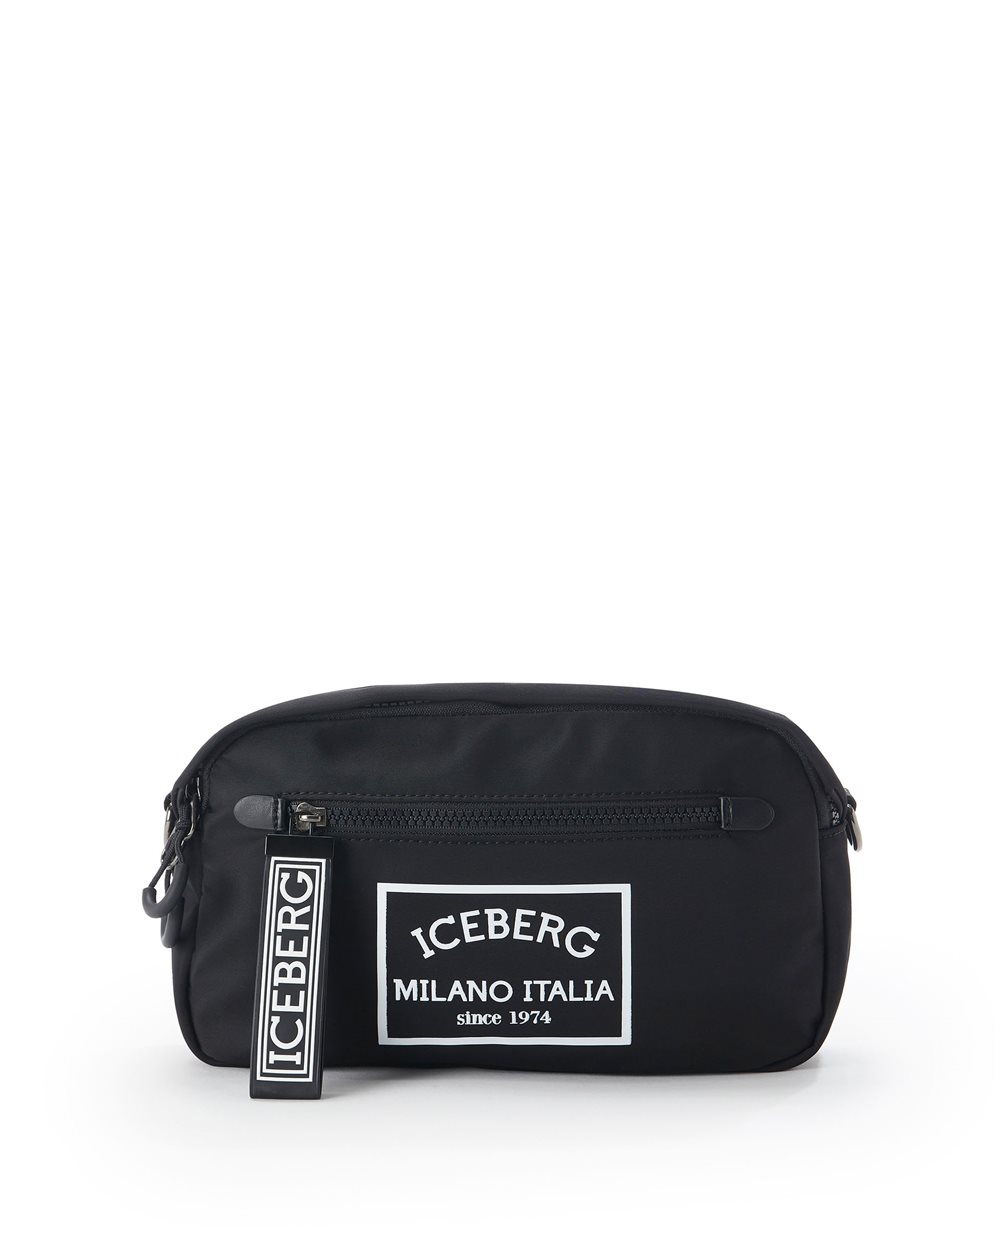 Shoulder bag -  ( SECONDO STEP US ) PROMO UP TO 40% | Iceberg - Official Website